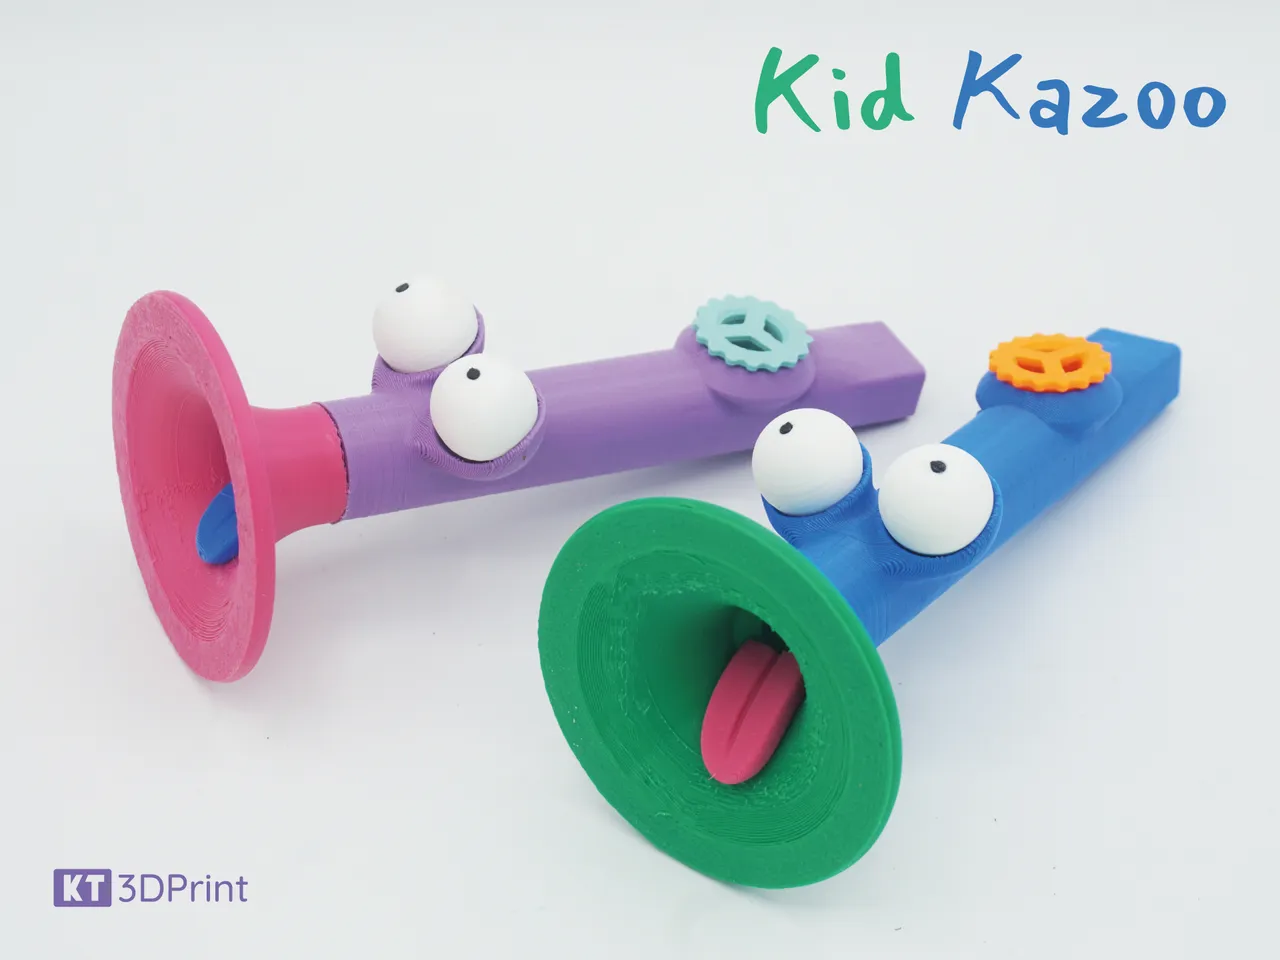 Instrument De Musique Kazoo